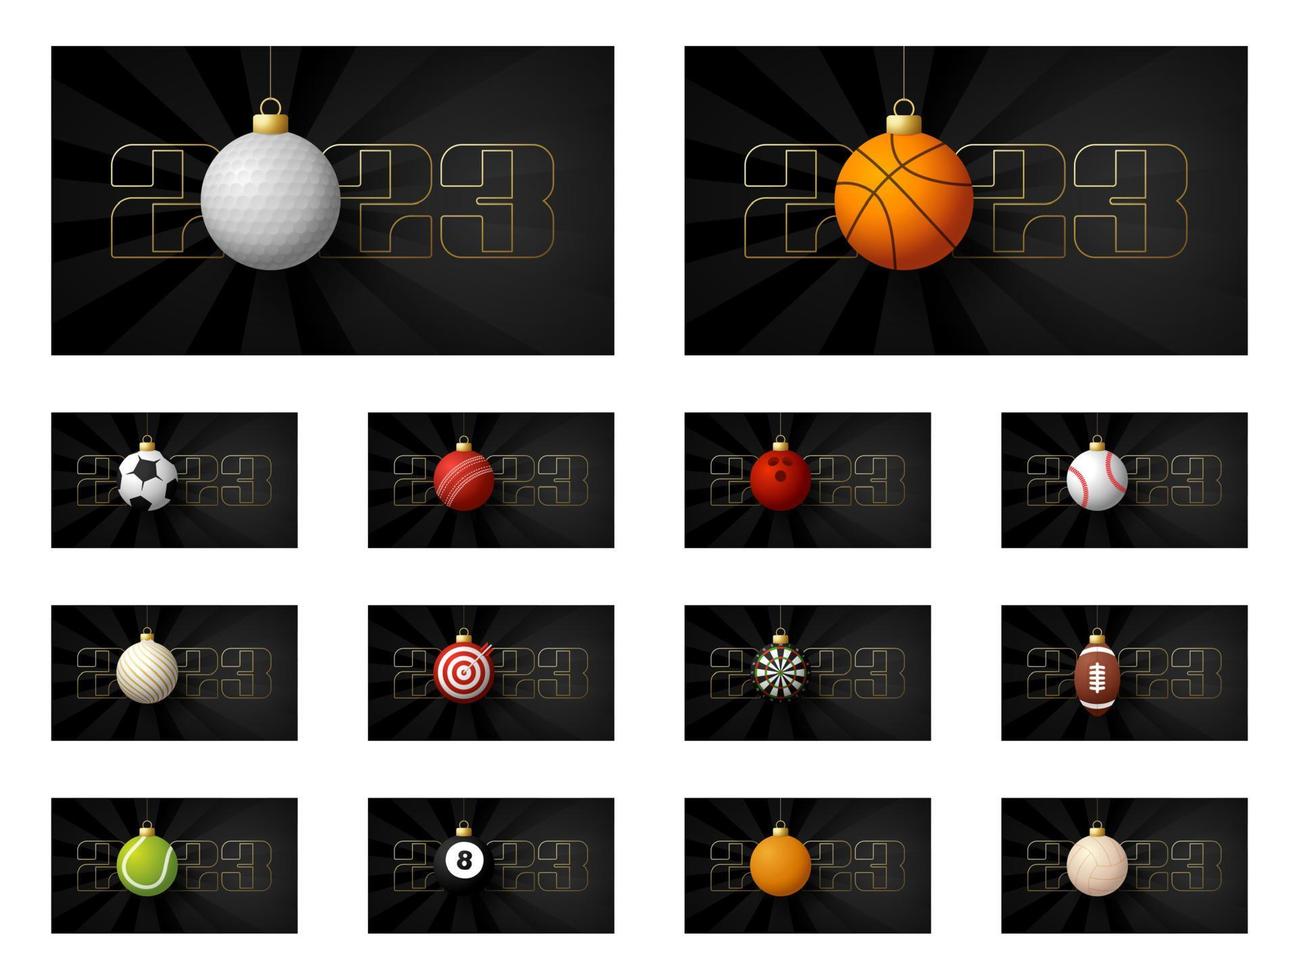 2023 neujahrs- und weihnachtssportbanner-set. sammlung von weihnachtsgrußkarten mit realistischem sportball als weihnachtsball auf schwarzem hintergrund mit der nummer 2023. vektorillustrationssatz vektor